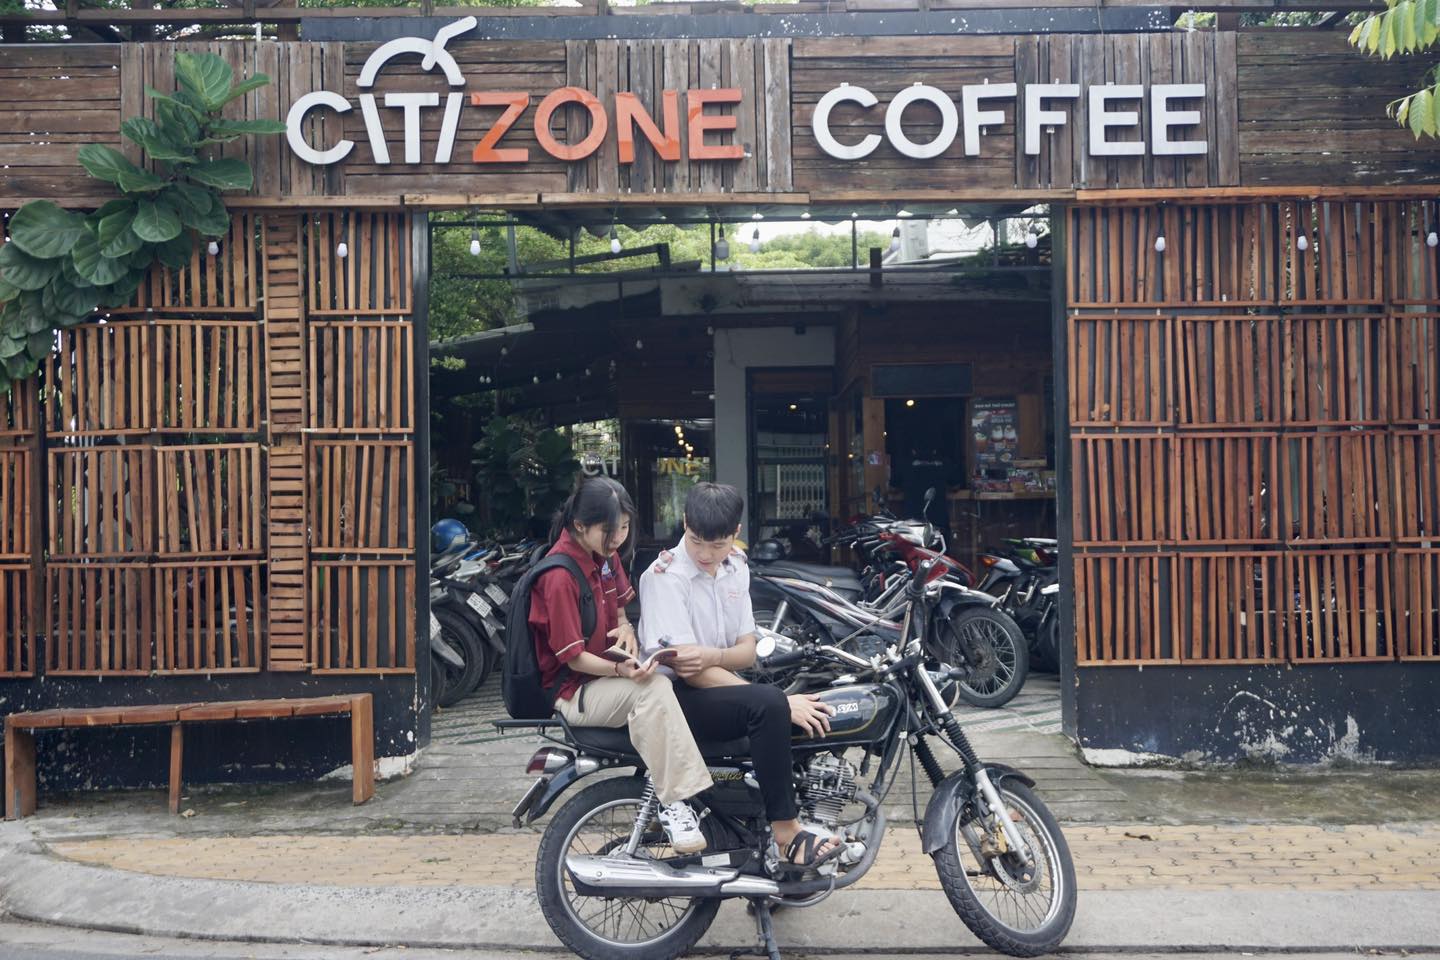 Không gian trước cửa quán Citizone Coffee khá bắt mắt và rộng rãi